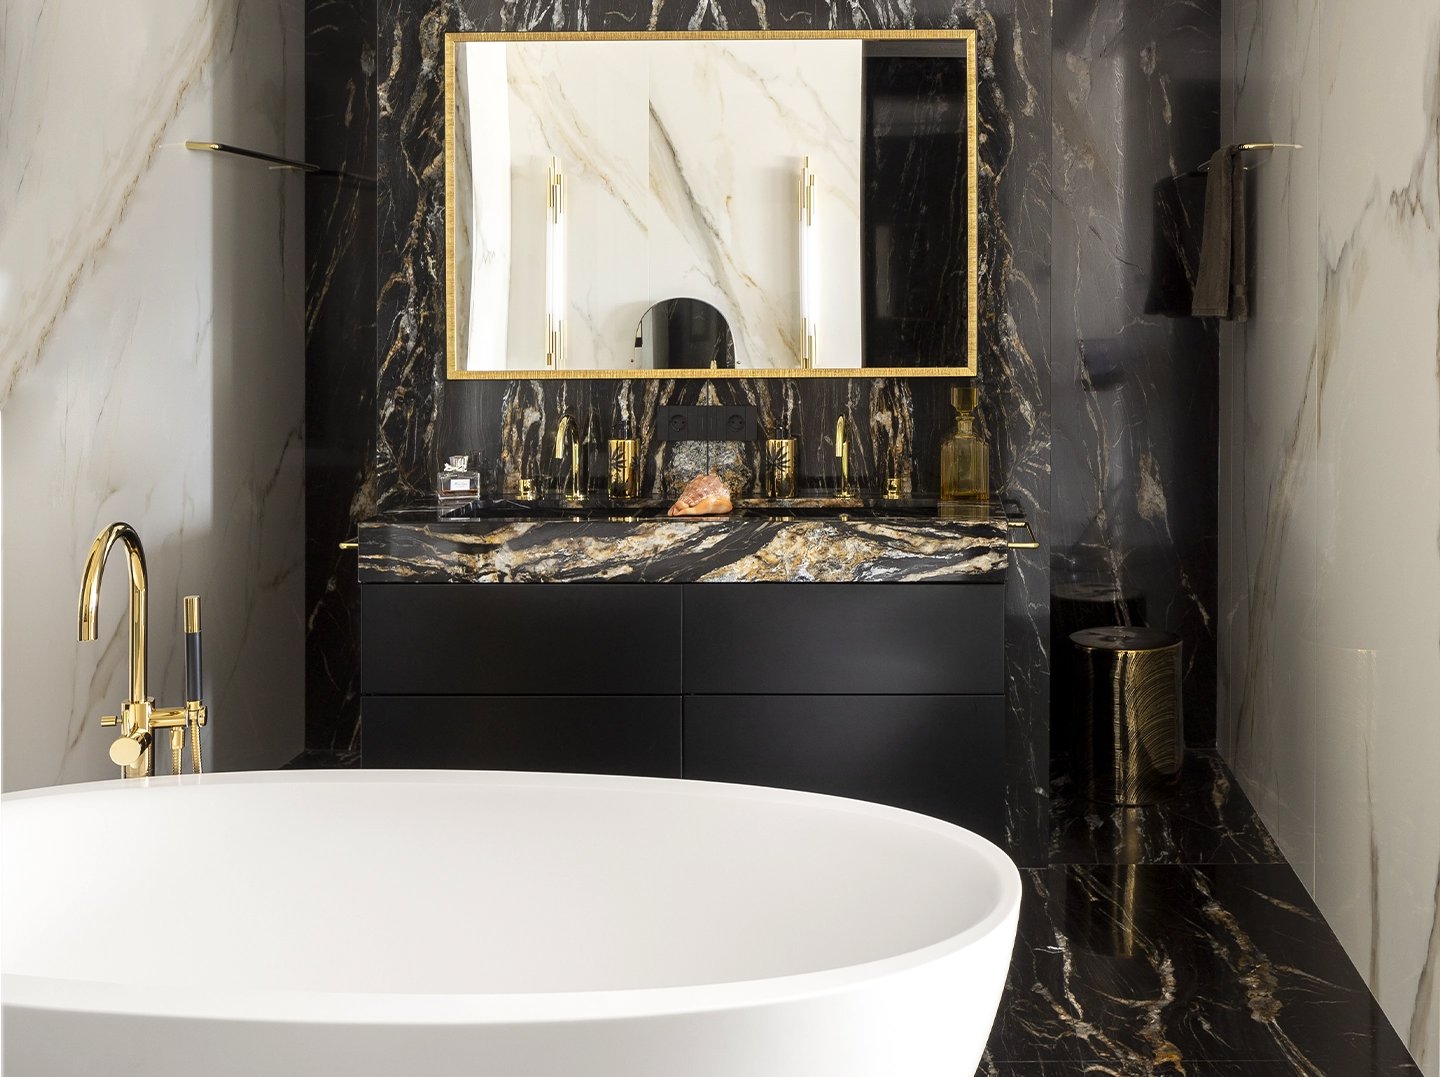 Baño sofisticado con bañera en negro y dorado